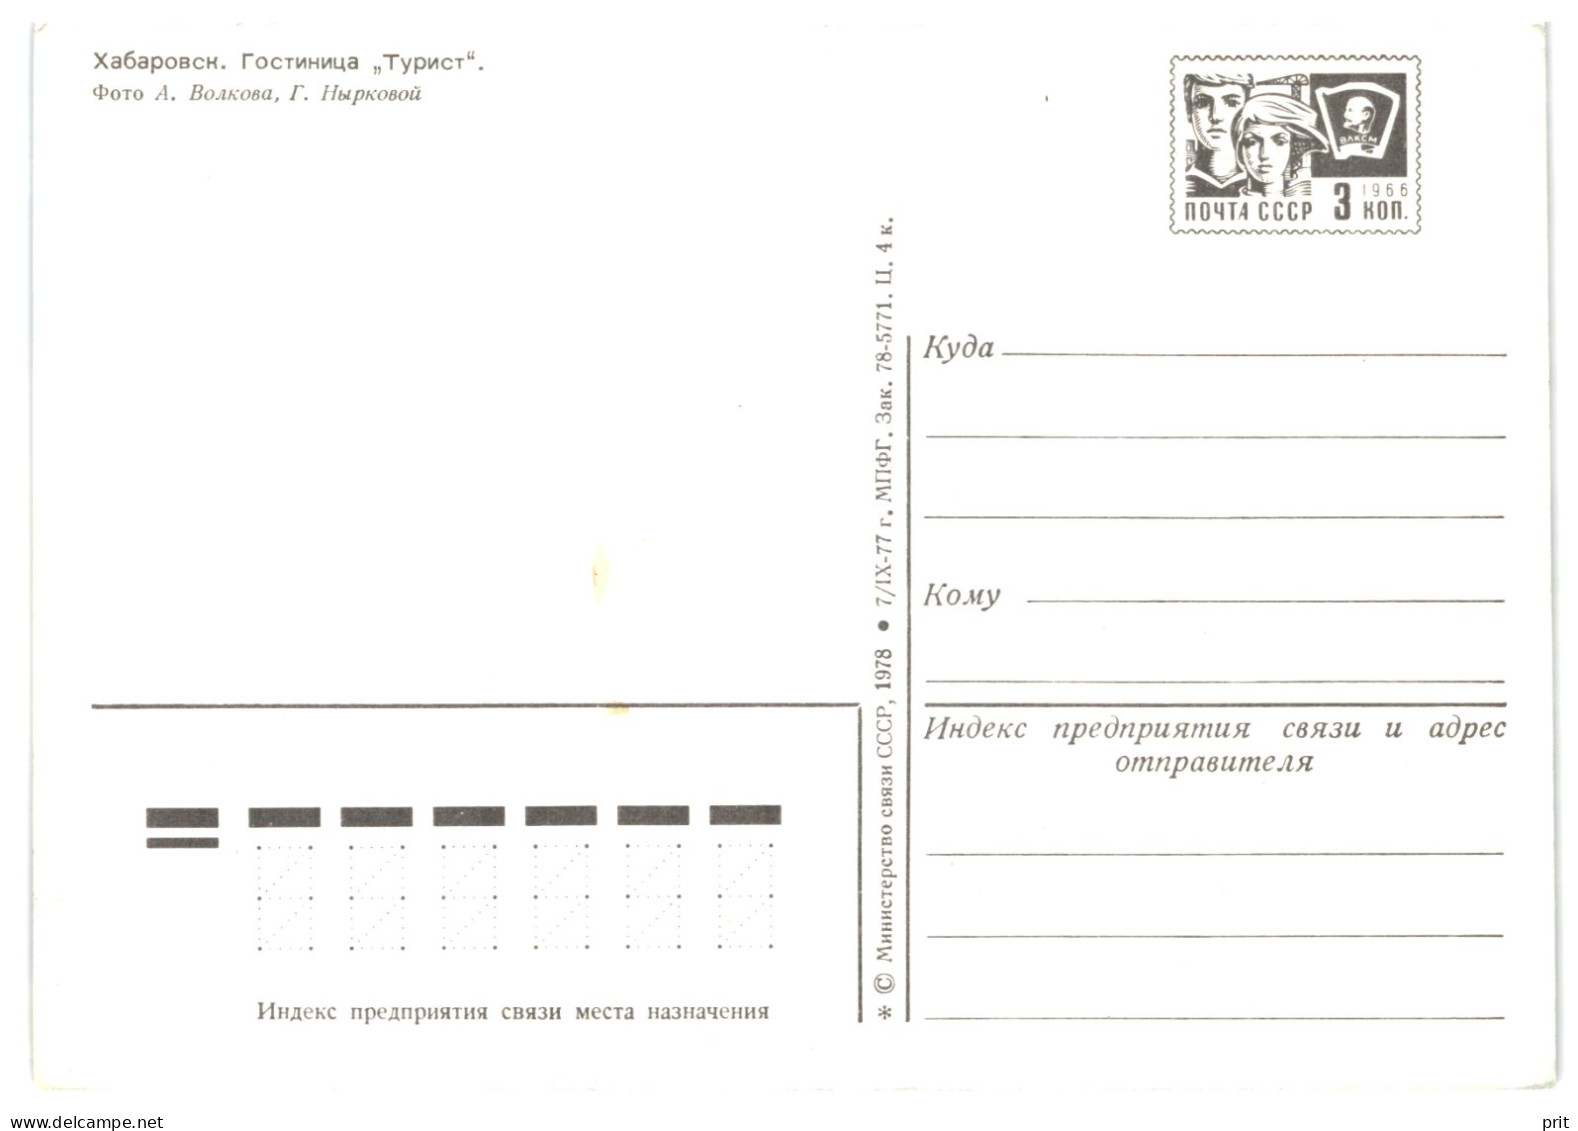 Turist Hotel, Khabarovsk, Russian Far East Siberia Amur USSR 1978 3Kop Stamped Stationery Card Postcard Unused - 1970-79